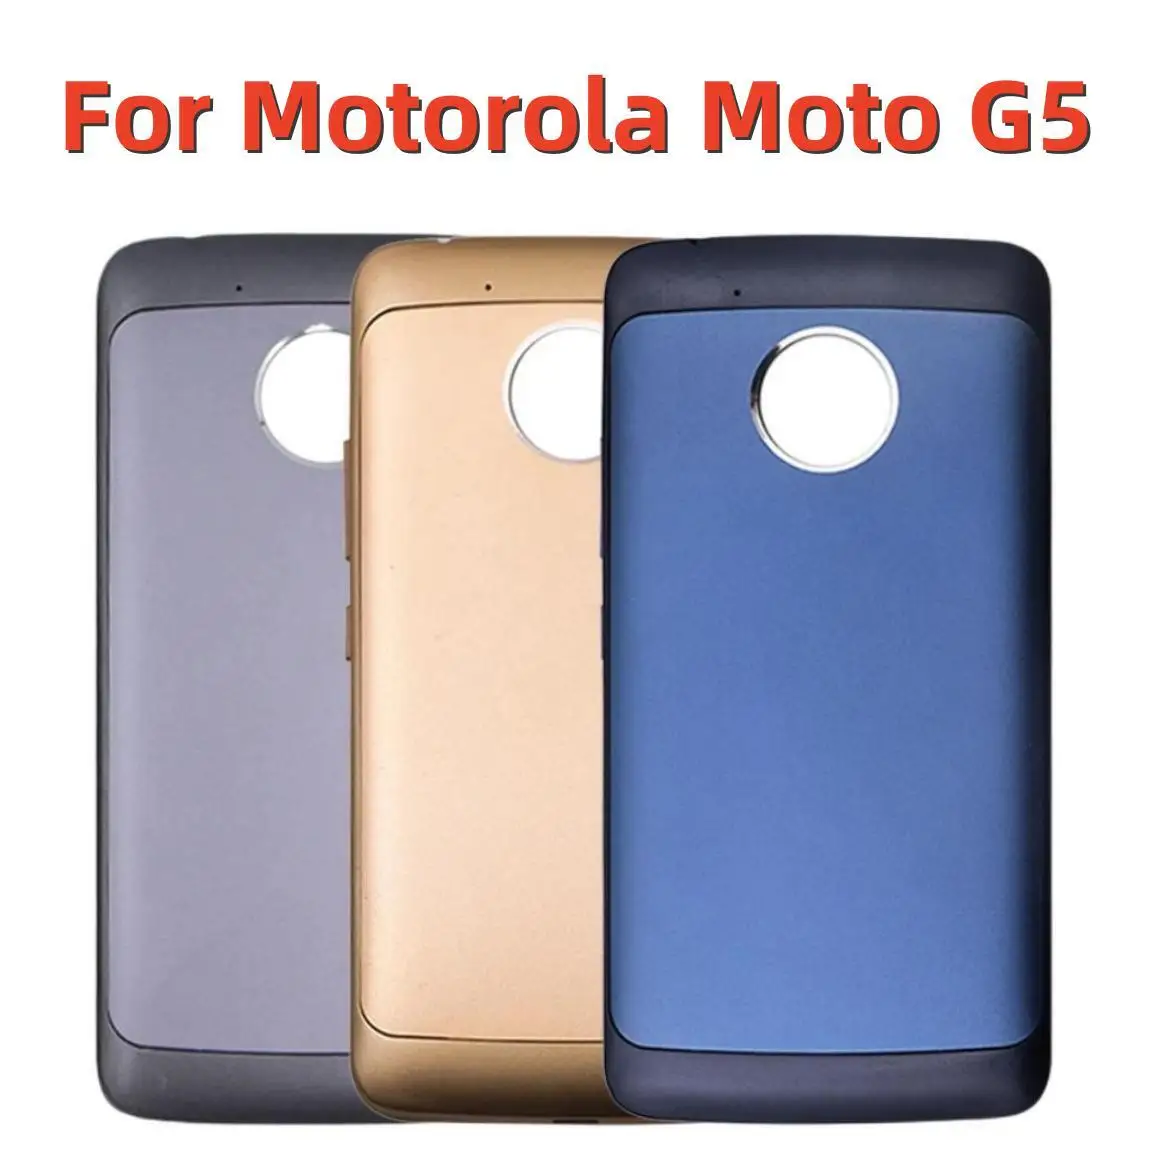 

New For Motorola Moto G5 XT1685 XT1672 XT1670 XT1671 XT1676 Metal Battery Back Cover G5 Rear Door Frame Housing Case Replacement